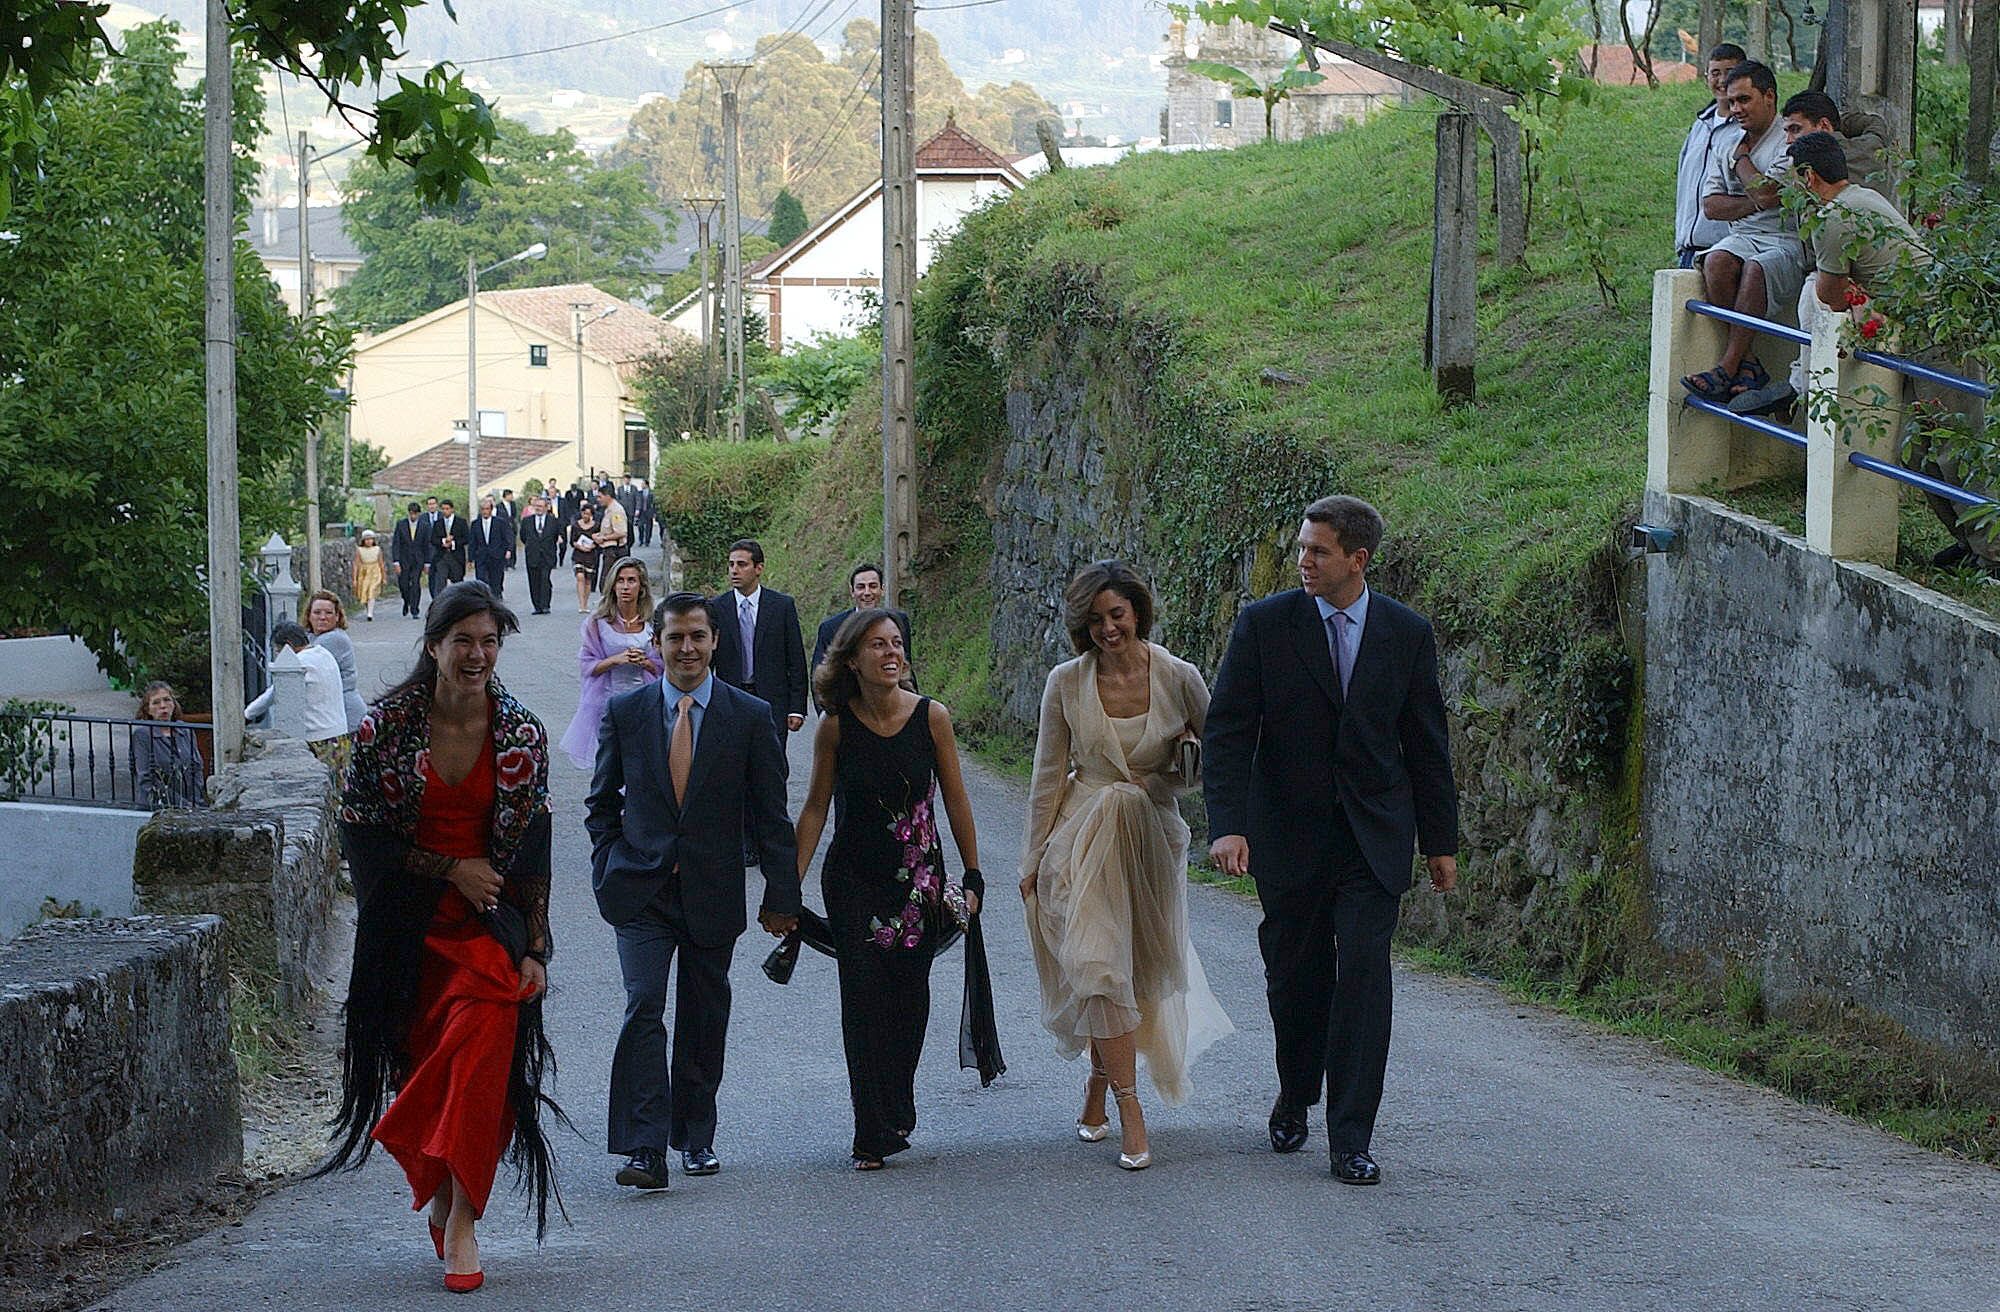 La boda de ¡Hola! que congregó a numerosos famosos se celebró en Redondela